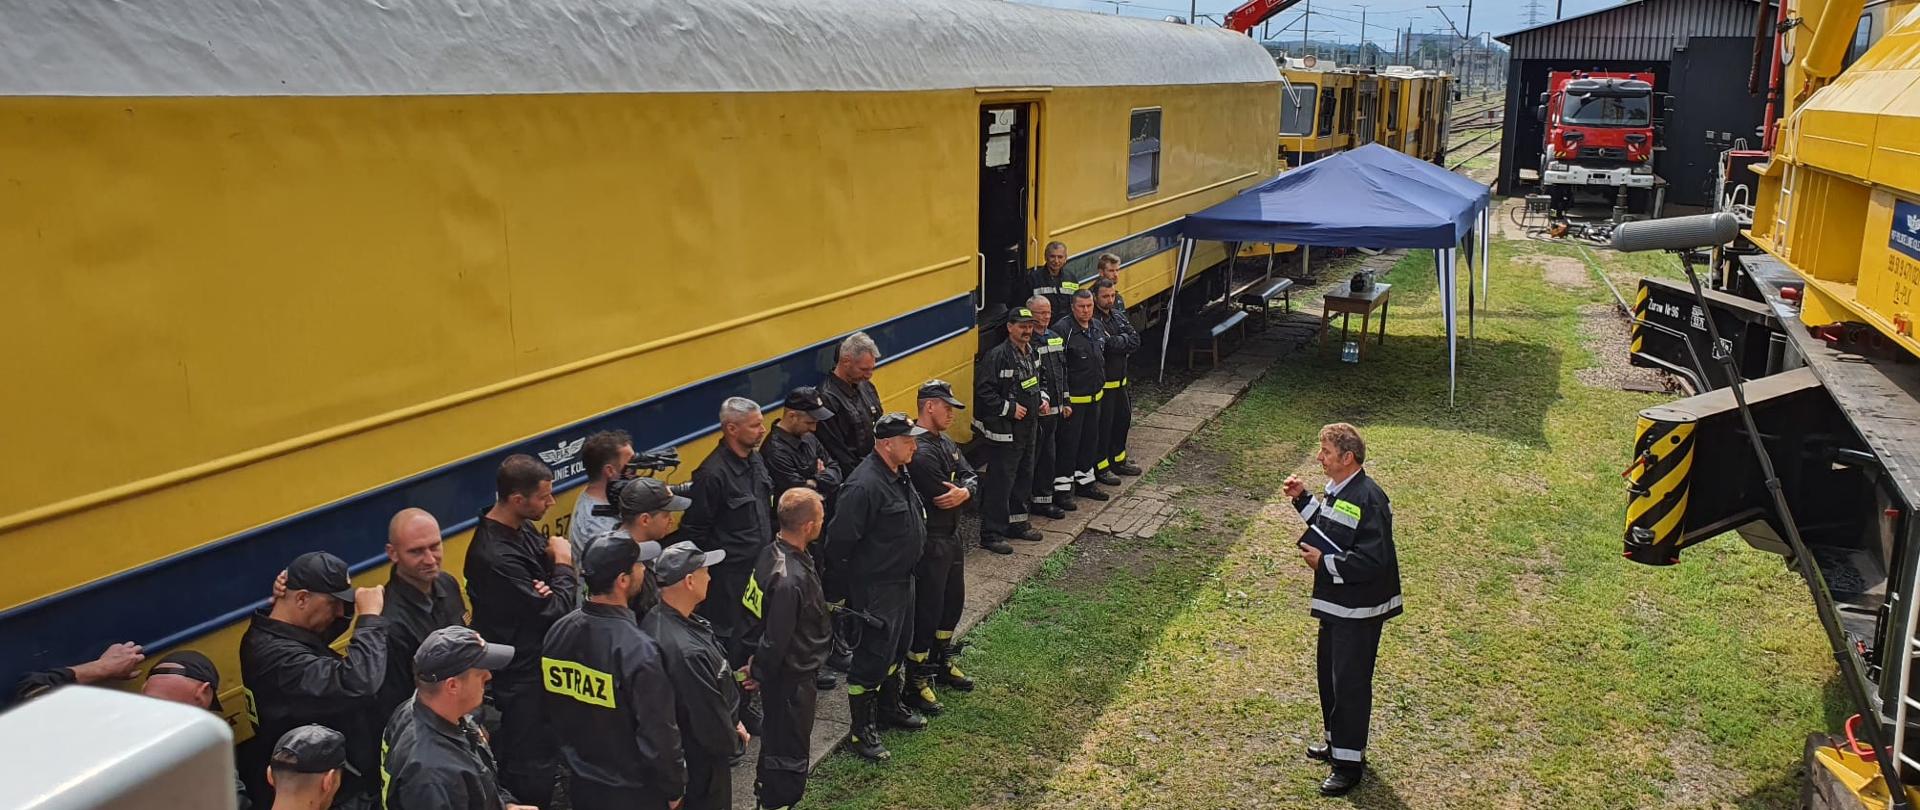 Strażacy w ubraniu koszarowym stoją na tle żółtego wagonu pociągu. Na przeciw pracownik ratownictwa kolejowego.